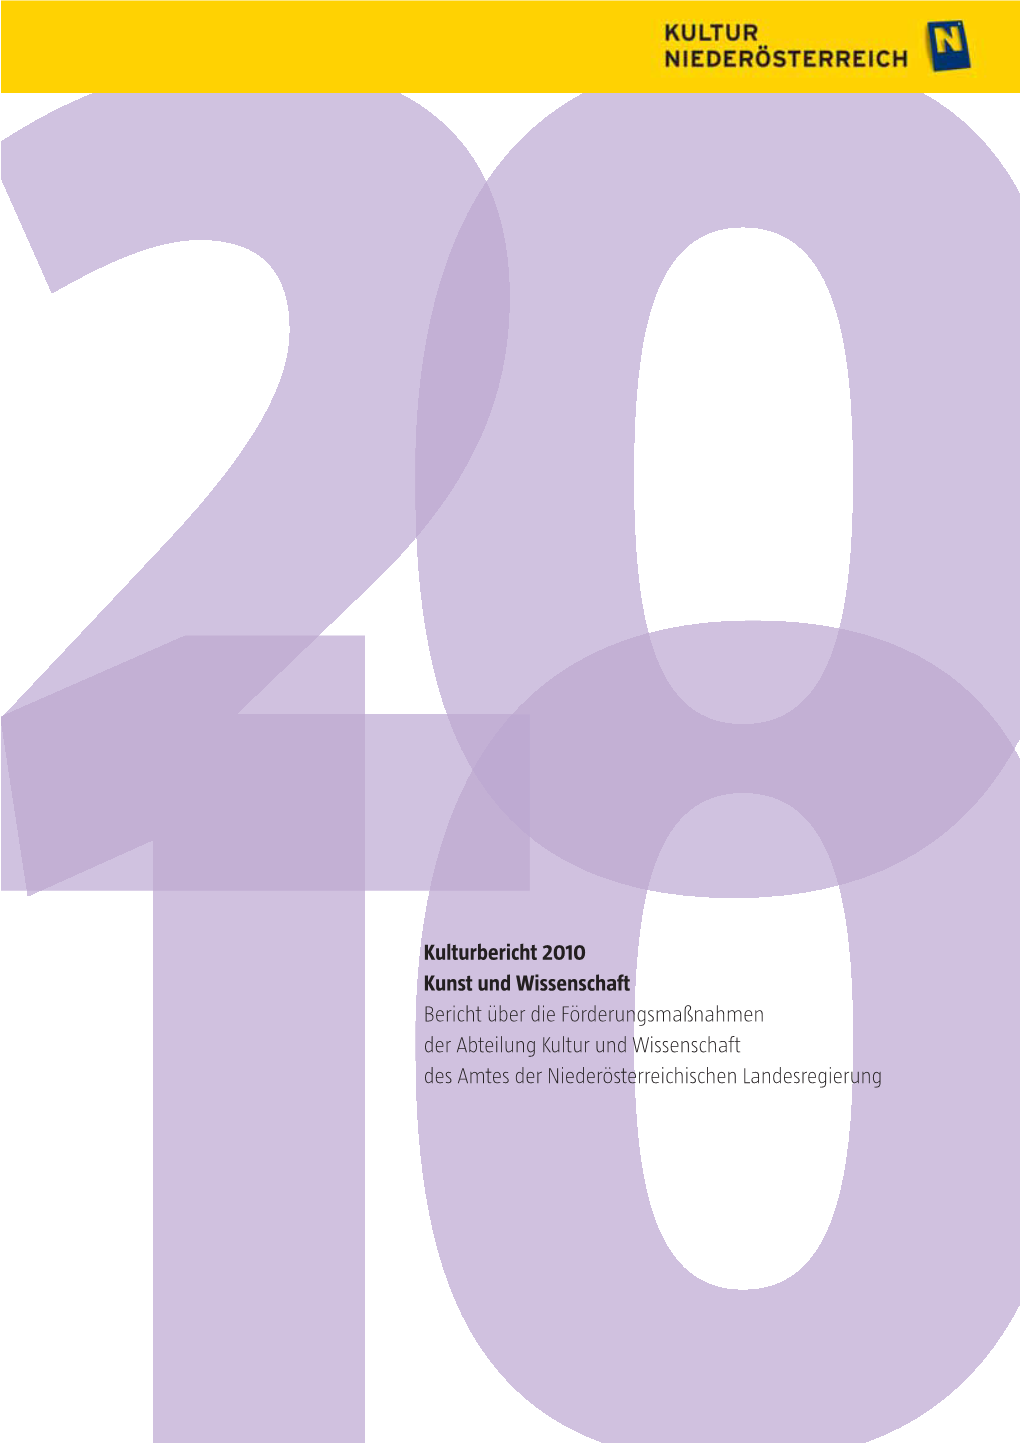 Kulturbericht 2010 Kunst Und Wissenschaft Bericht Über Die Förderungsmaßnahmen Der Abteilung Kultur Und Wissenschaft Des